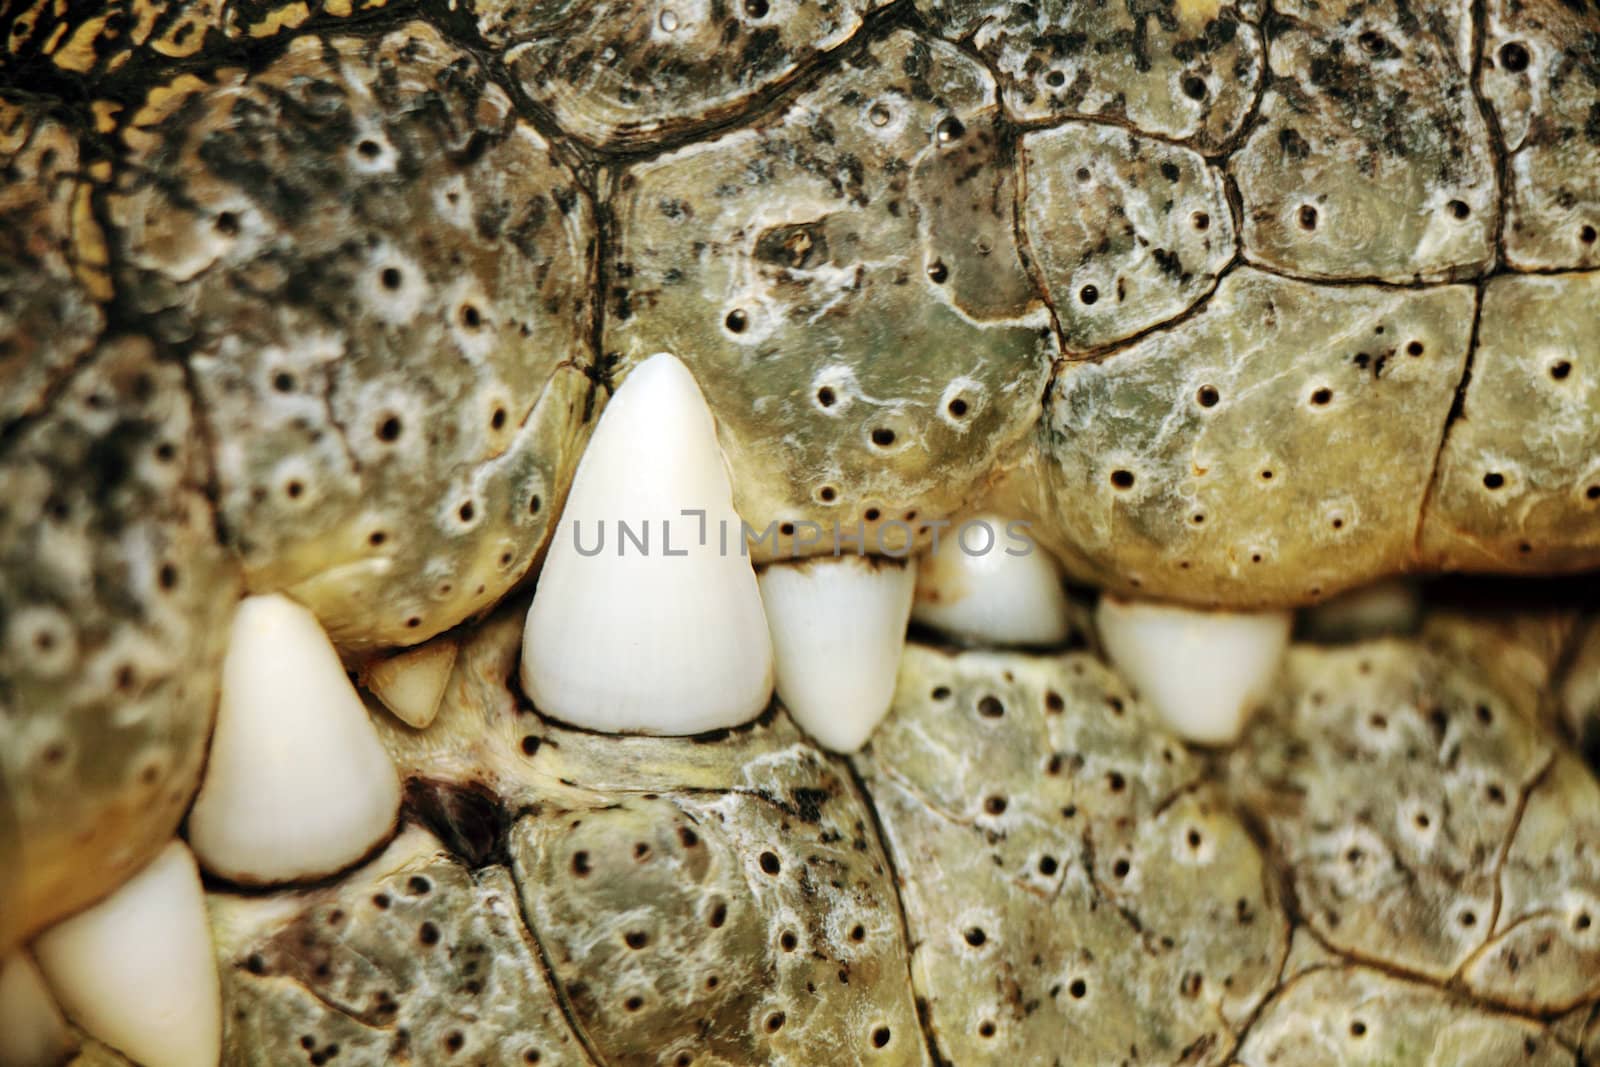 close up of a nile crocodile mouth and teeth